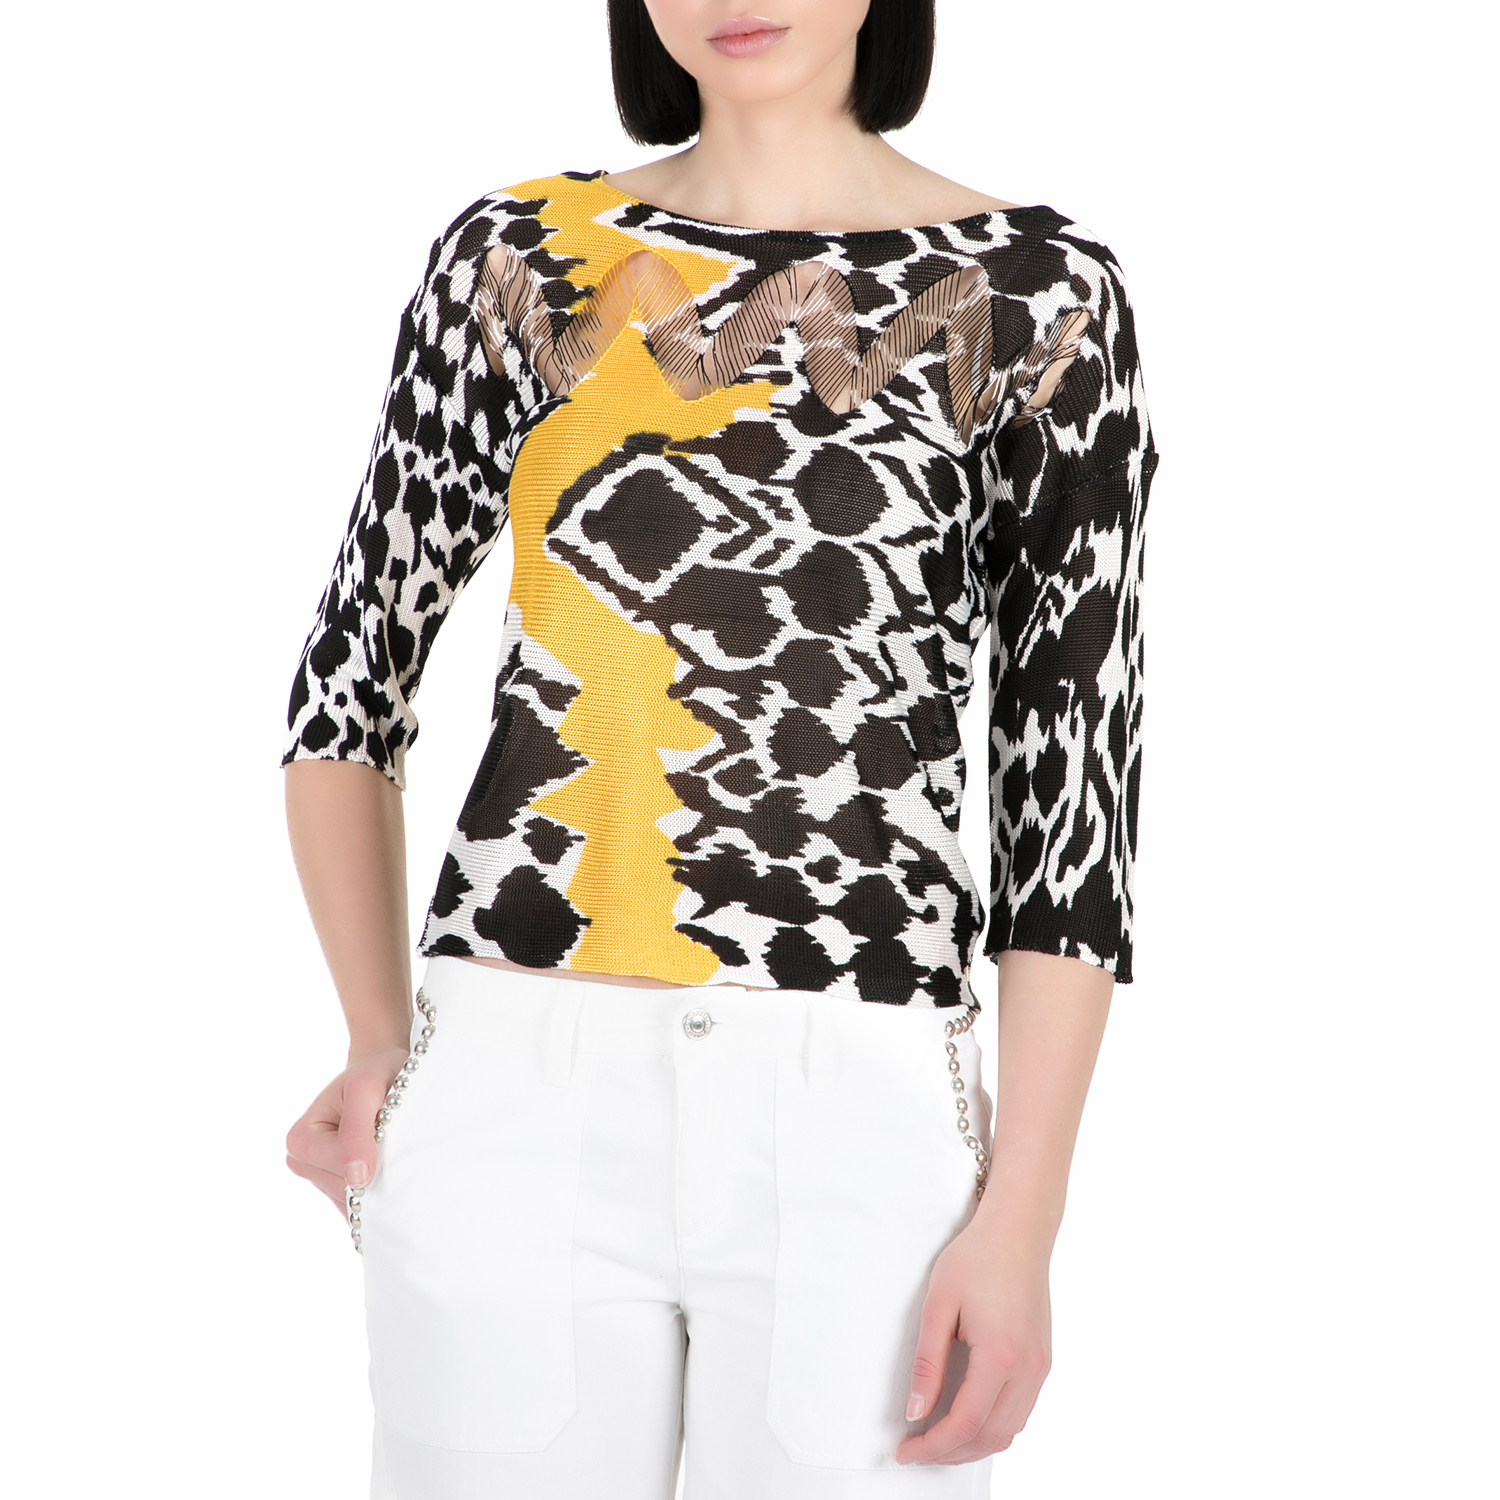 GUESS - Γυναικεία μακρυμάνικη μπλούζα GUESS με μοτίβο Γυναικεία/Ρούχα/Μπλούζες/Μακρυμάνικες